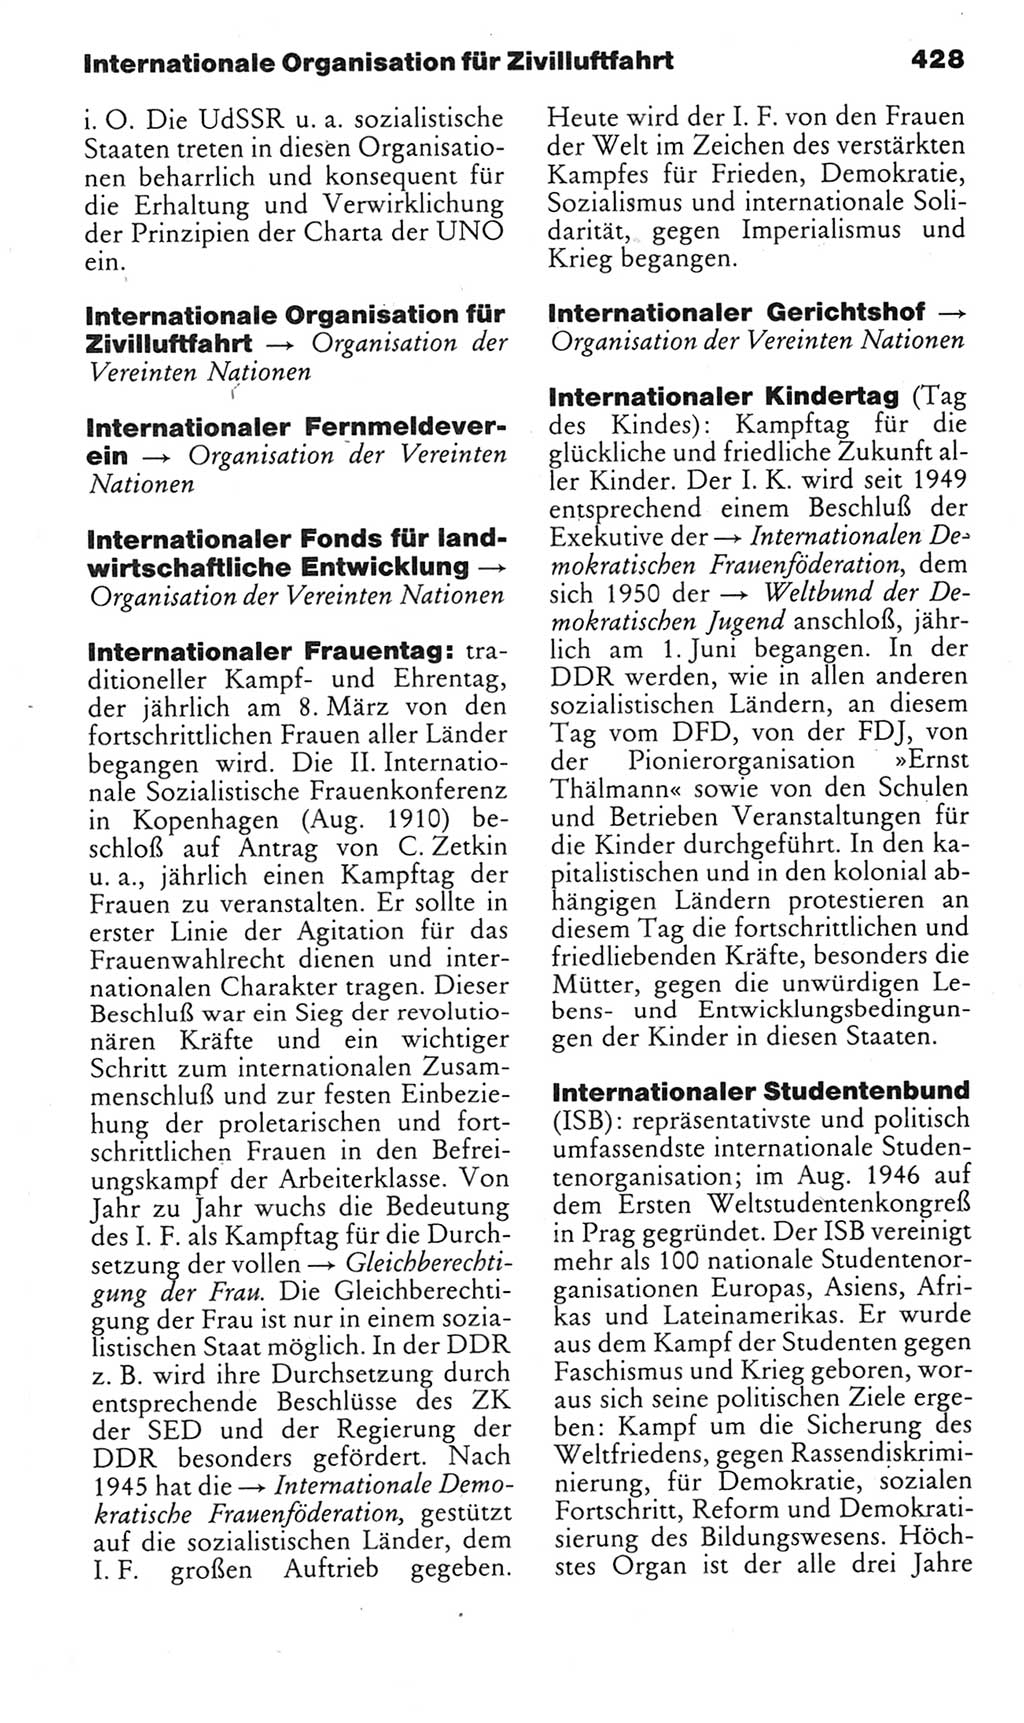 Kleines politisches Wörterbuch [Deutsche Demokratische Republik (DDR)] 1985, Seite 428 (Kl. pol. Wb. DDR 1985, S. 428)